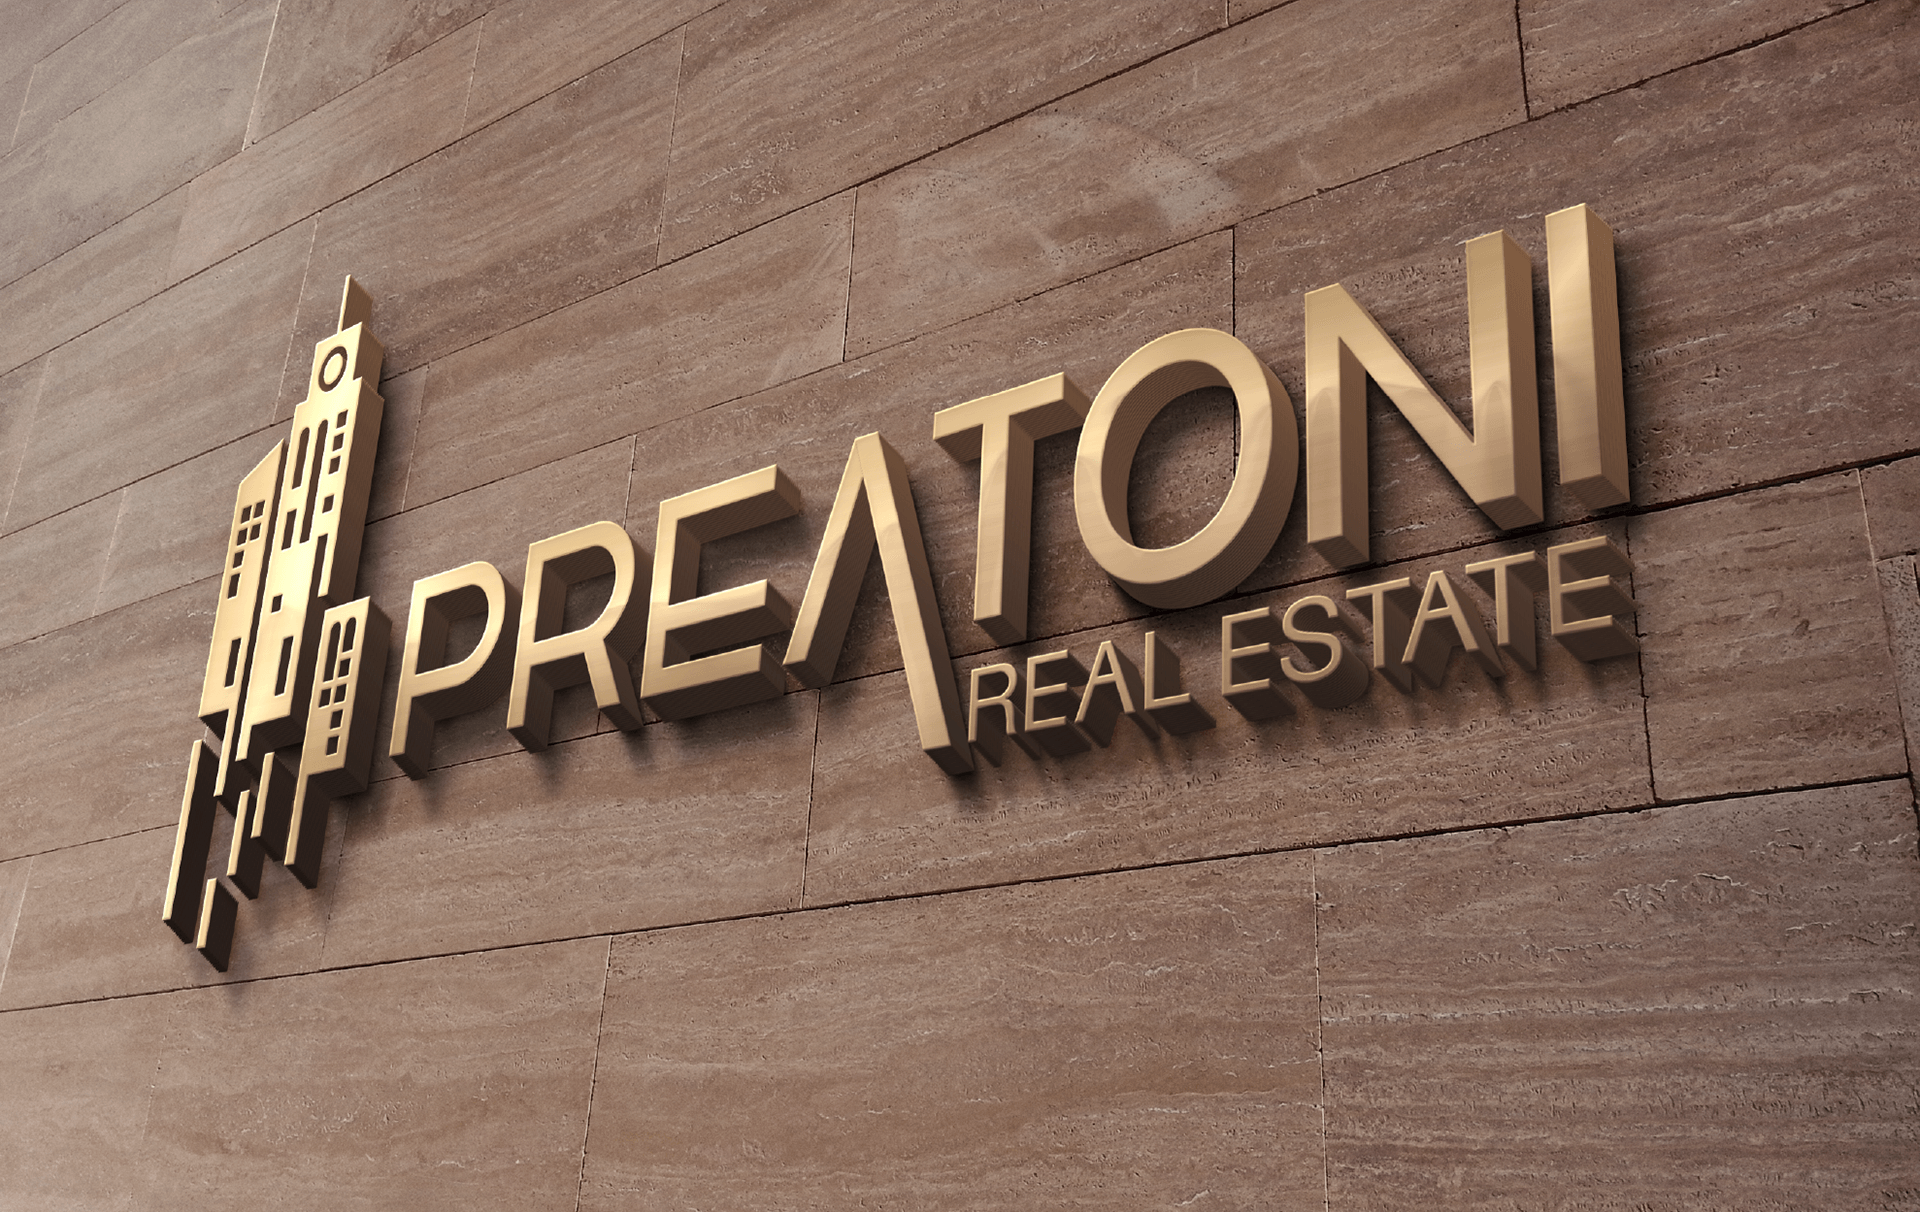 preatoni-real-estate_sign